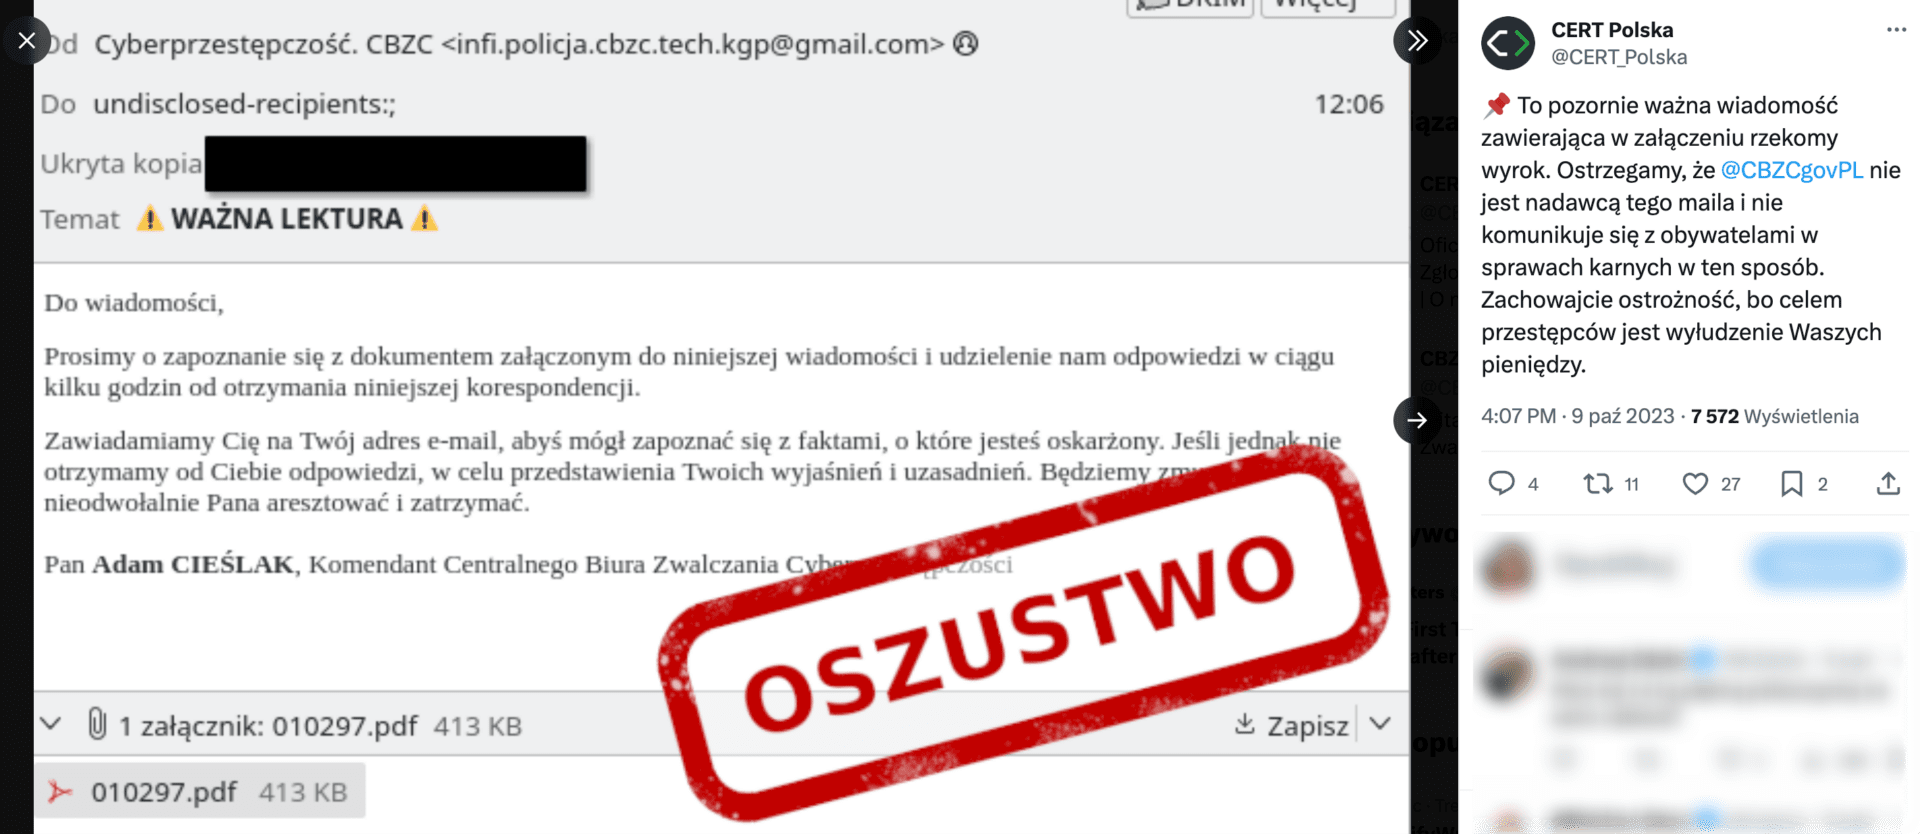 Zrzut ekranu wpisu CERT Polska na portalu X. Widoczny jest przykładowy mail od oszustów.